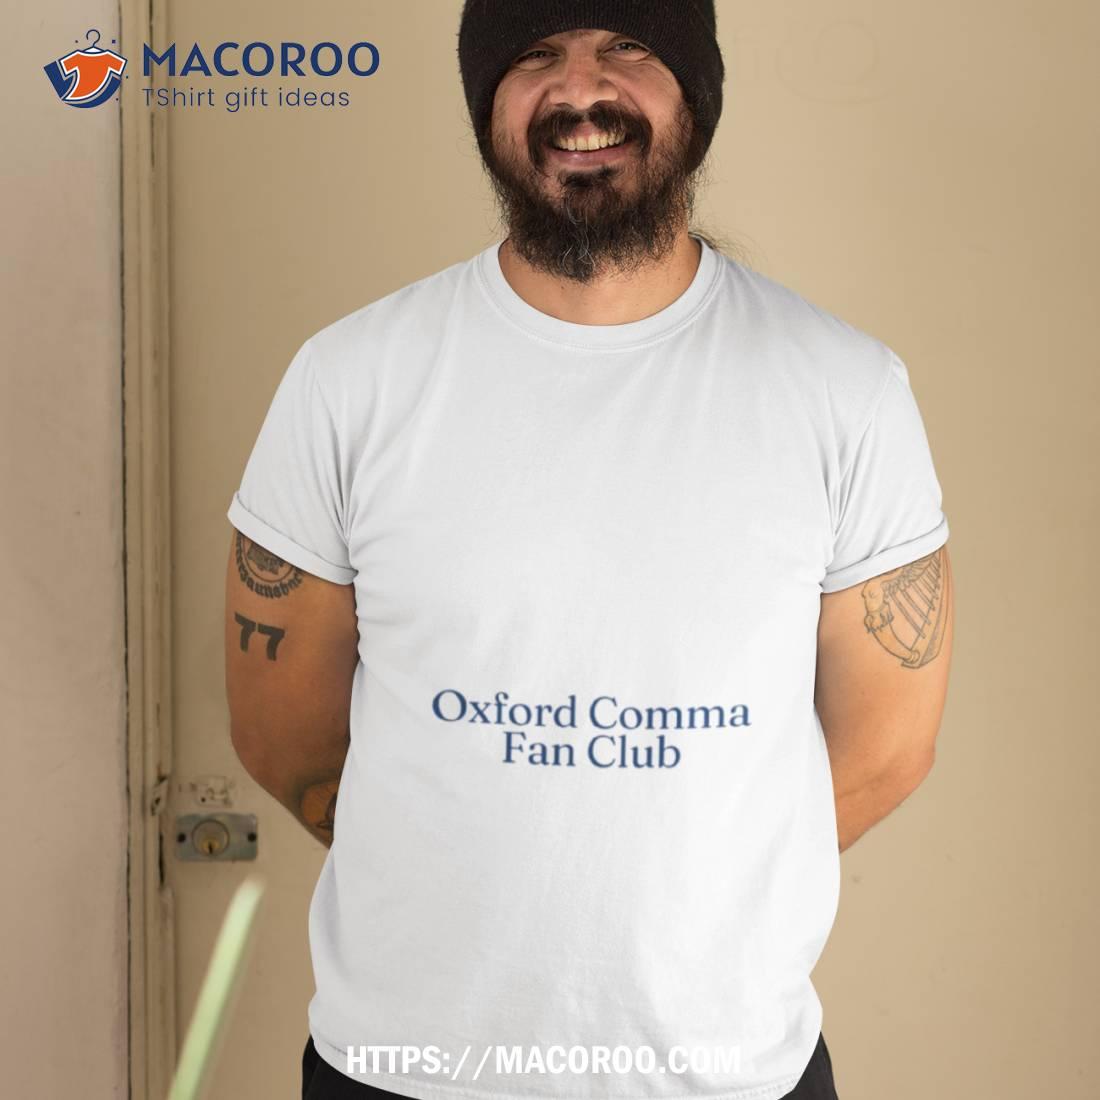 Oxford Comma Fan Club Shirt Tshirt 2